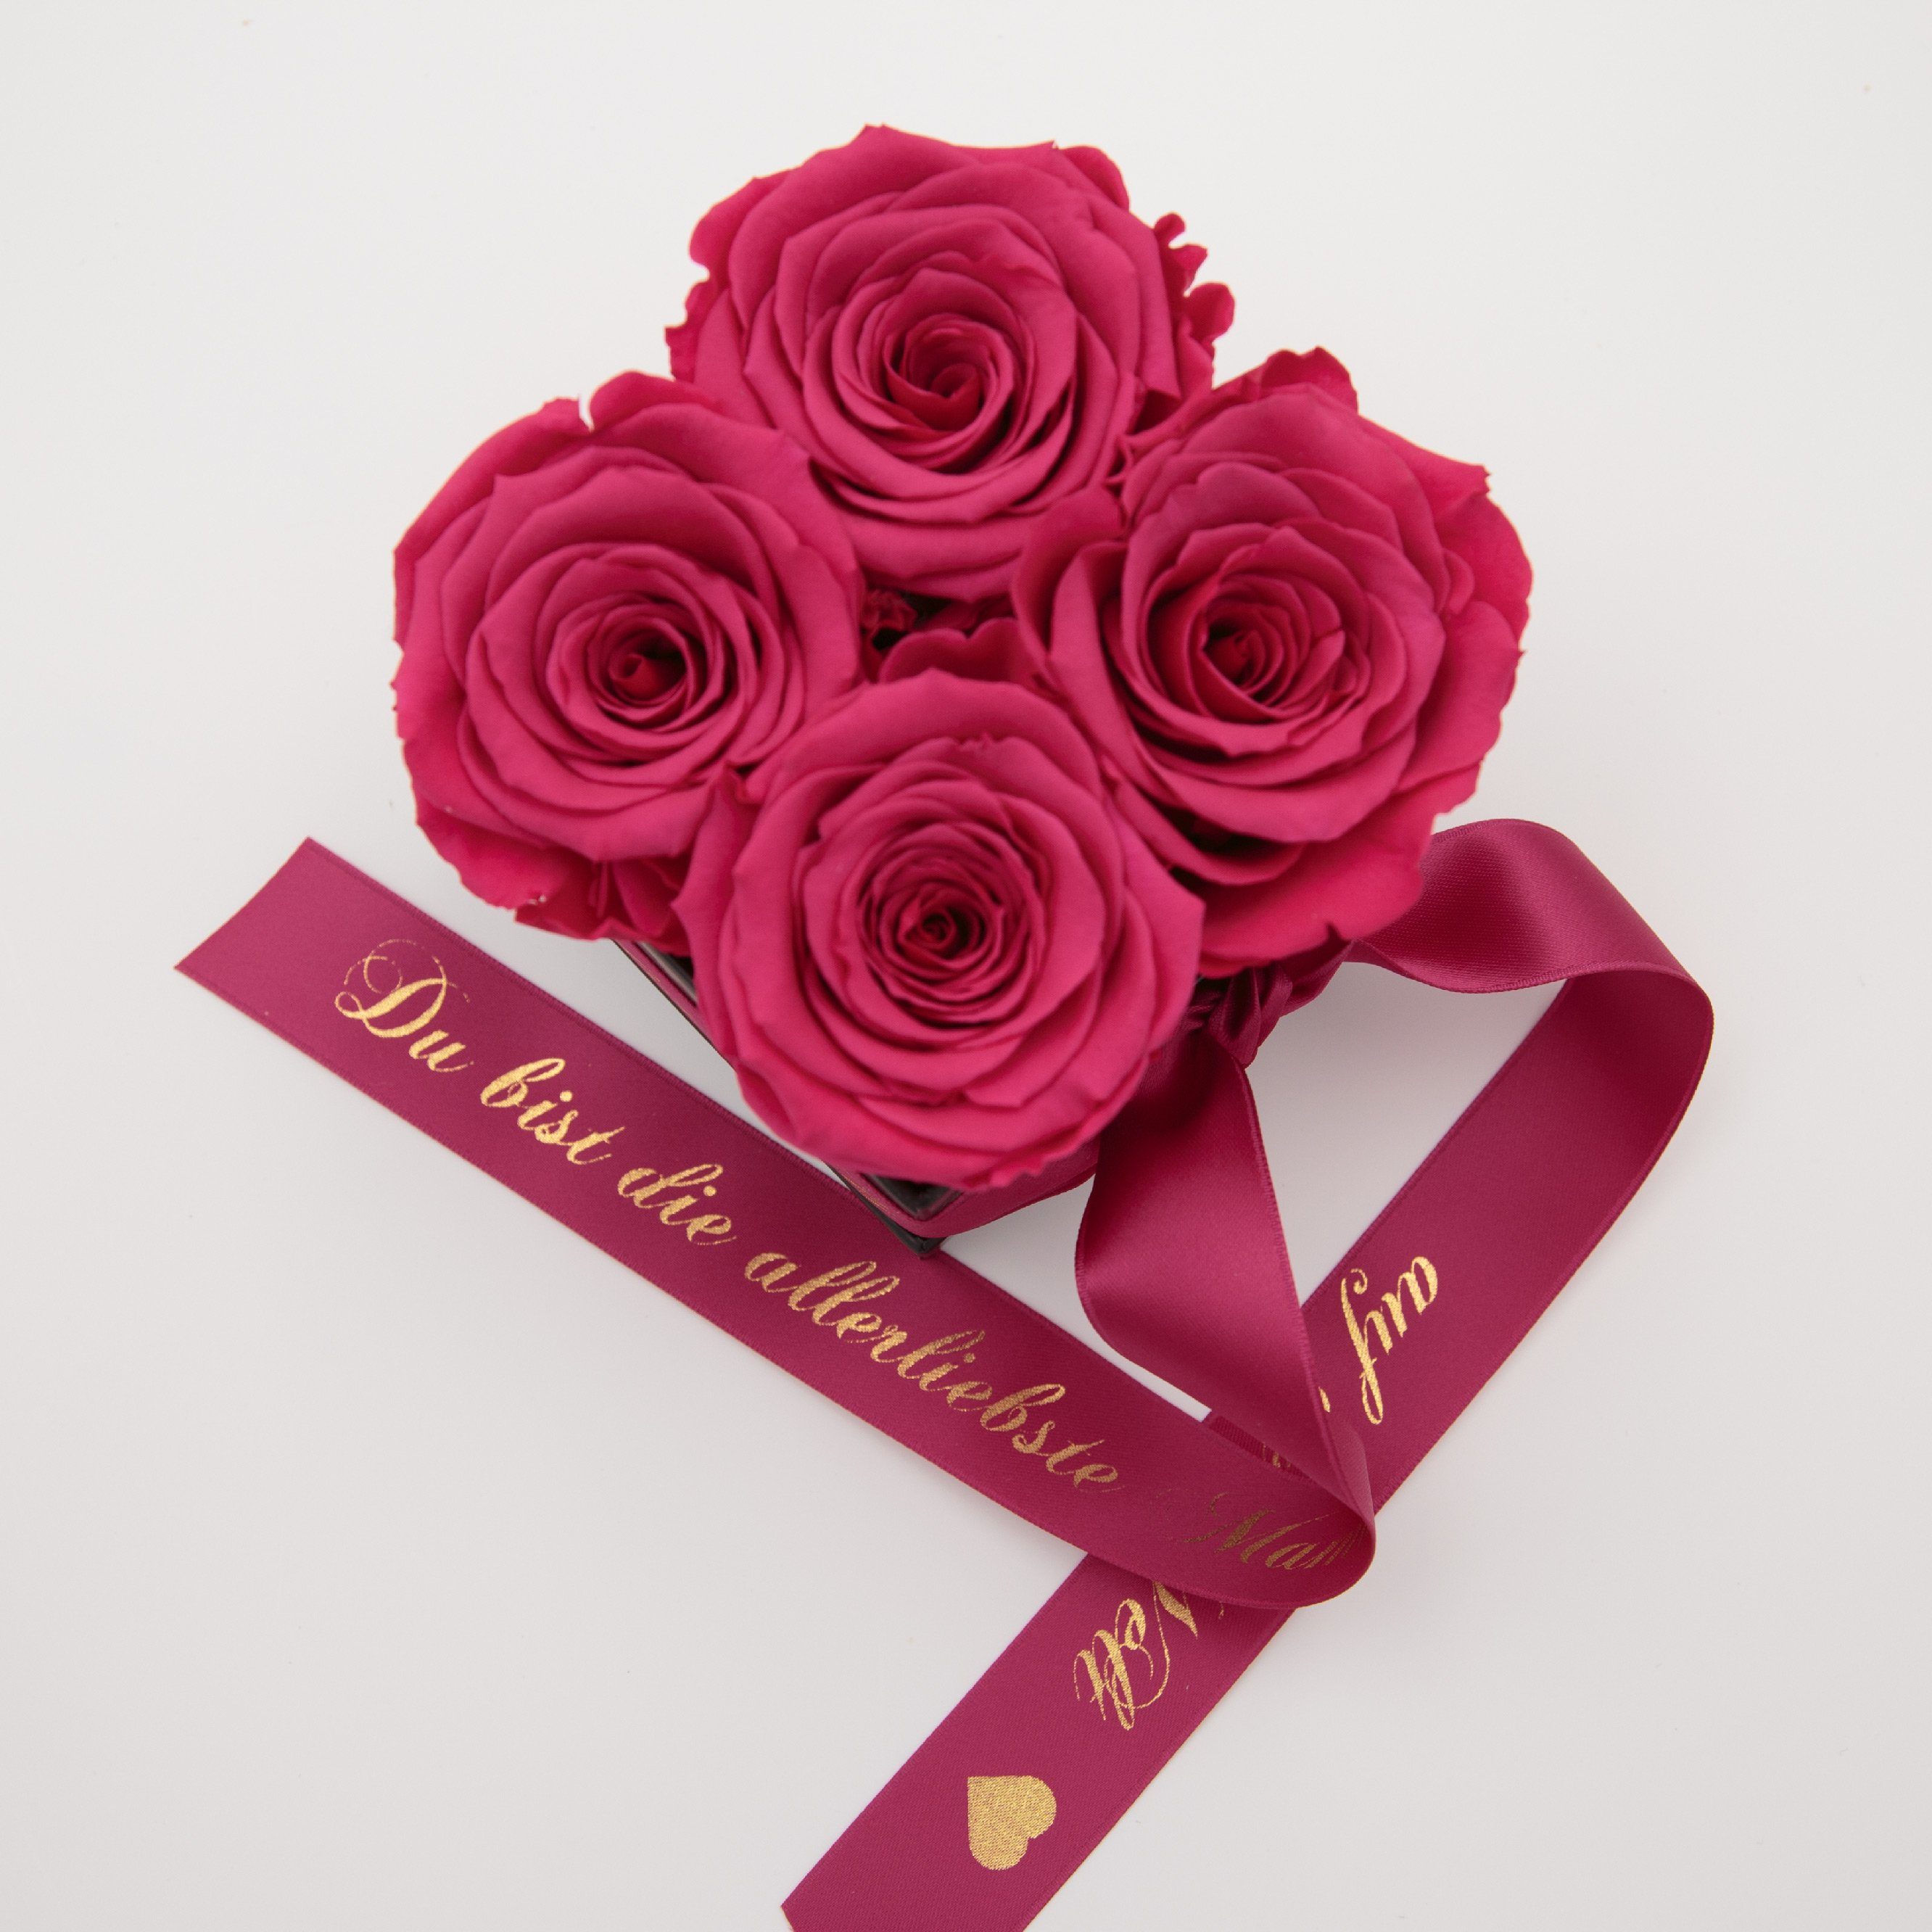 Kunstblume Allerliebste 4 ROSEMARIE Jahre der Rosen Pink cm, Rose, auf Rosen 3 konservierte Höhe Welt Geschenk haltbar Heidelberg, Rosenbox Echte SCHULZ 8,5 Mama